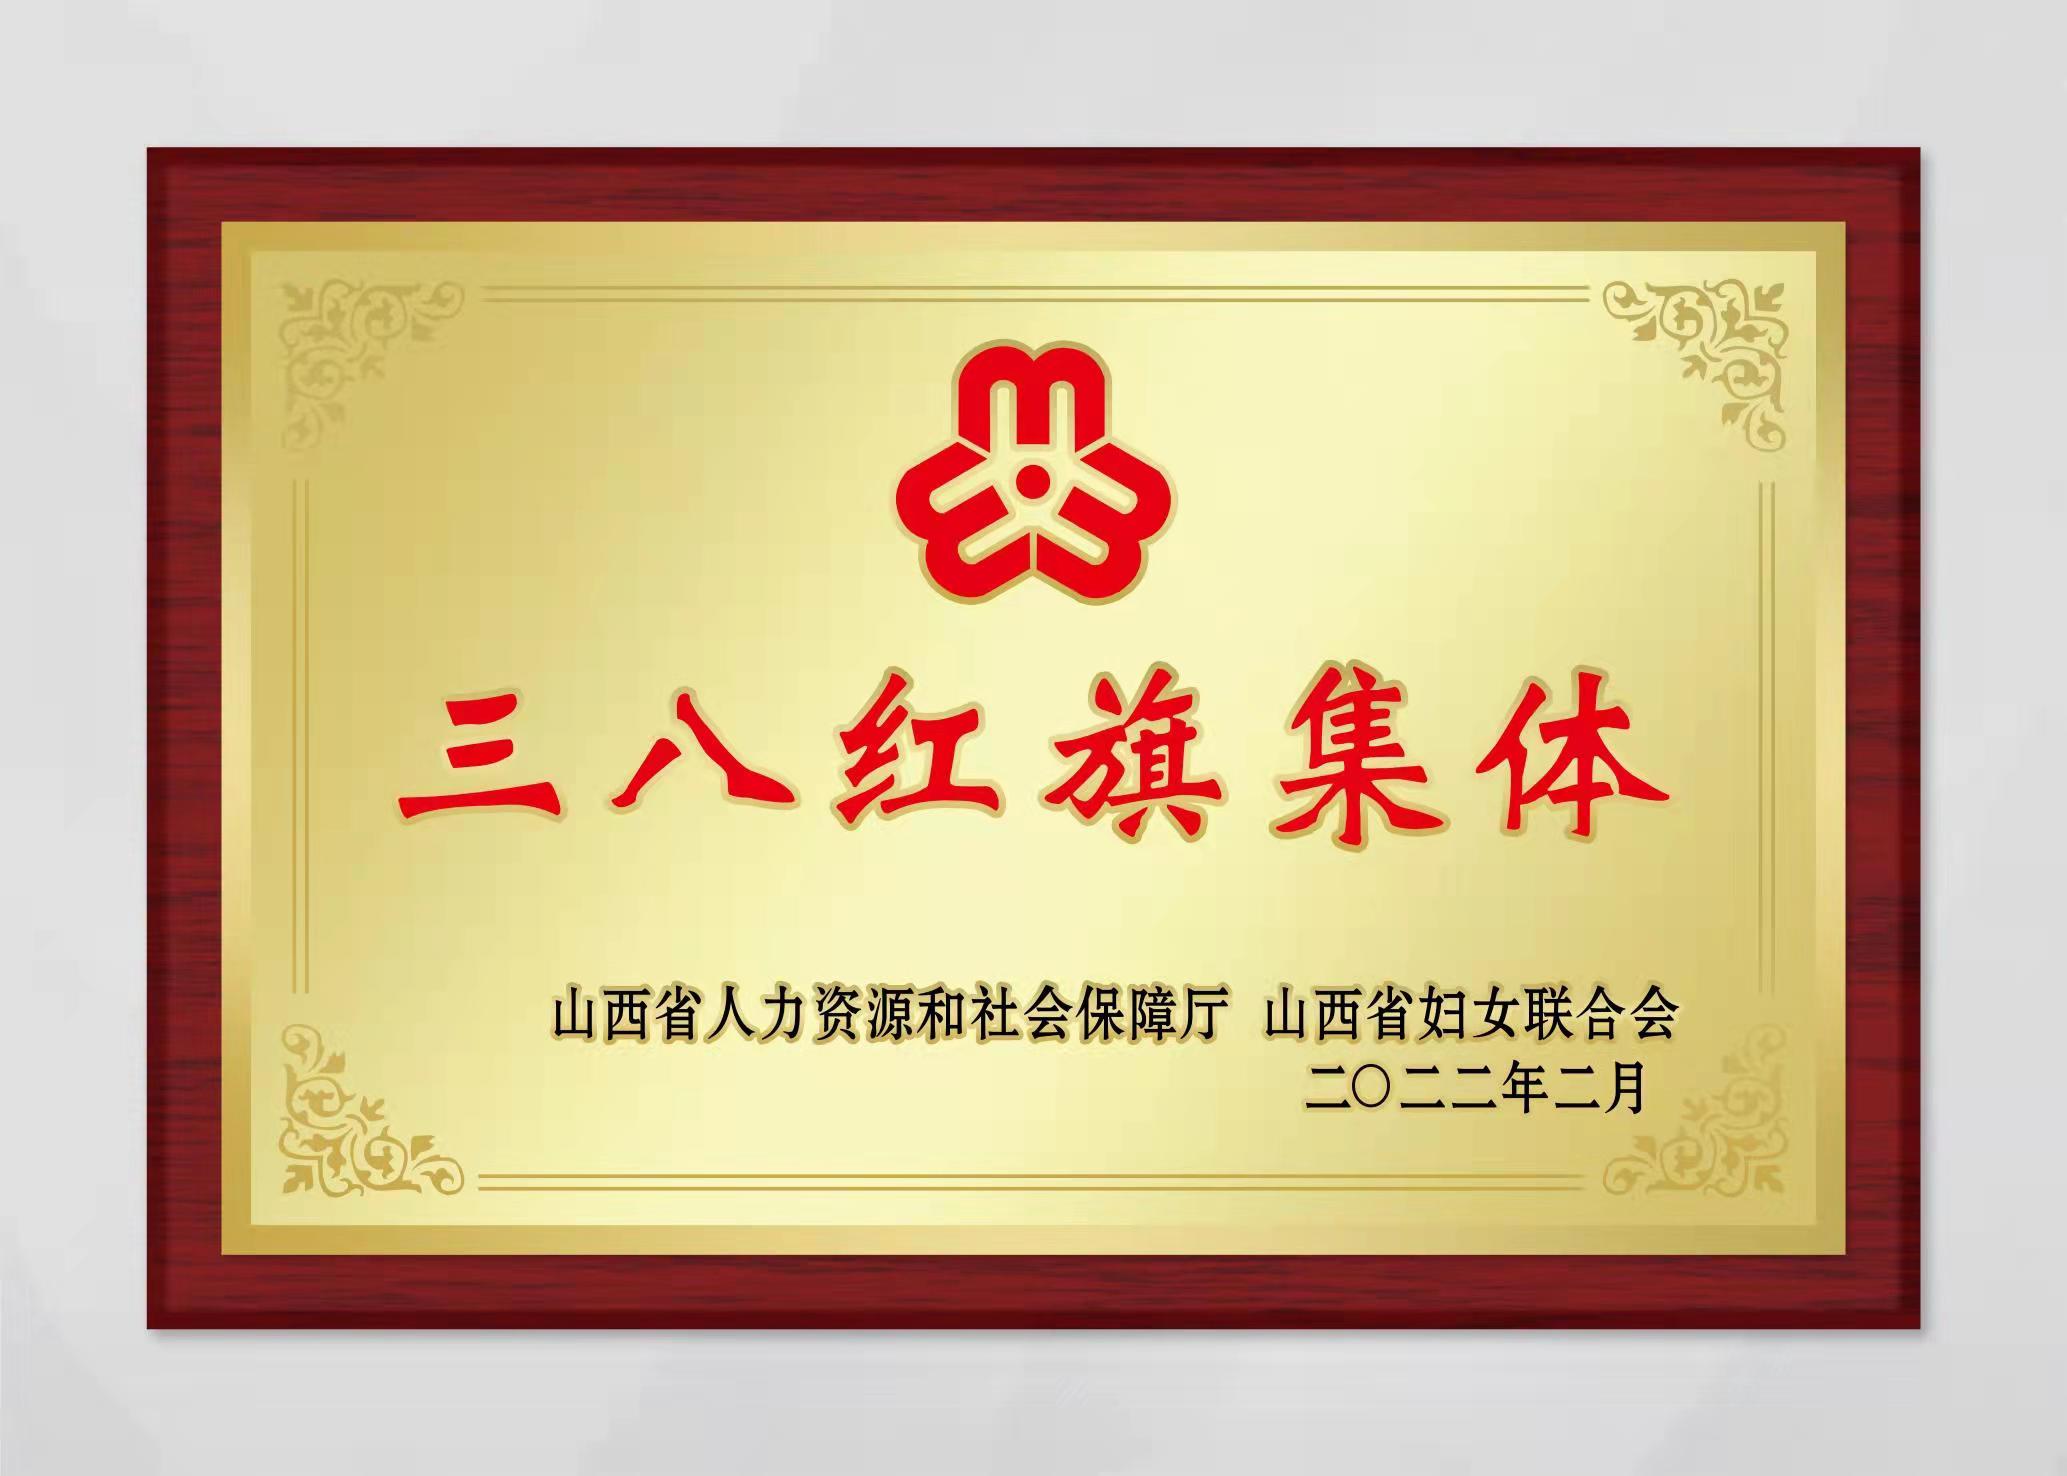 山西中科潞安紫外光電科技有限公司被評為山西省三八婦女先進集體。